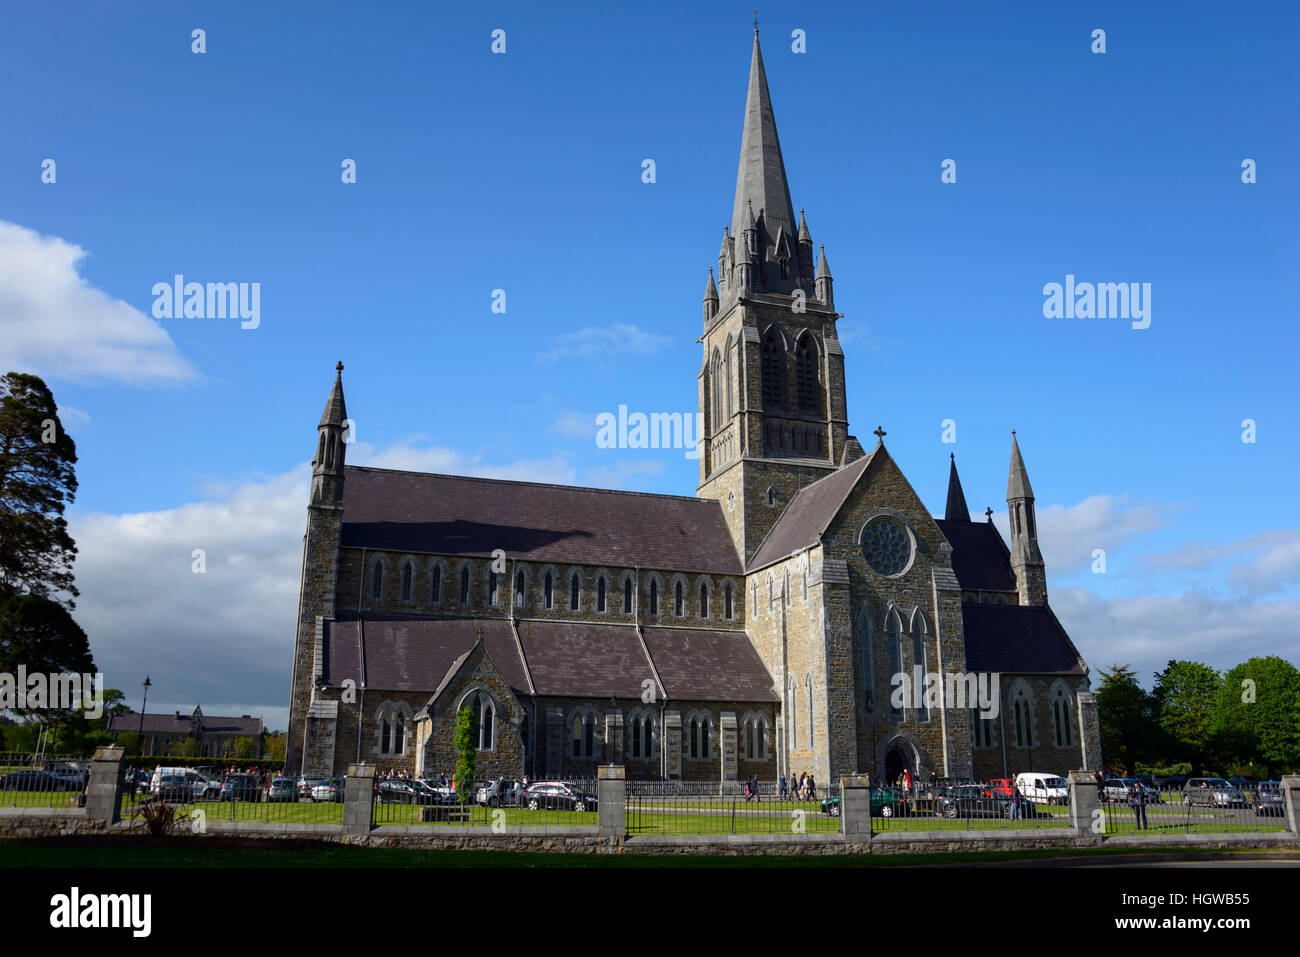 St. Mary's church, Killarney, Ireland, Great Britain, Cathedral Stock Photo